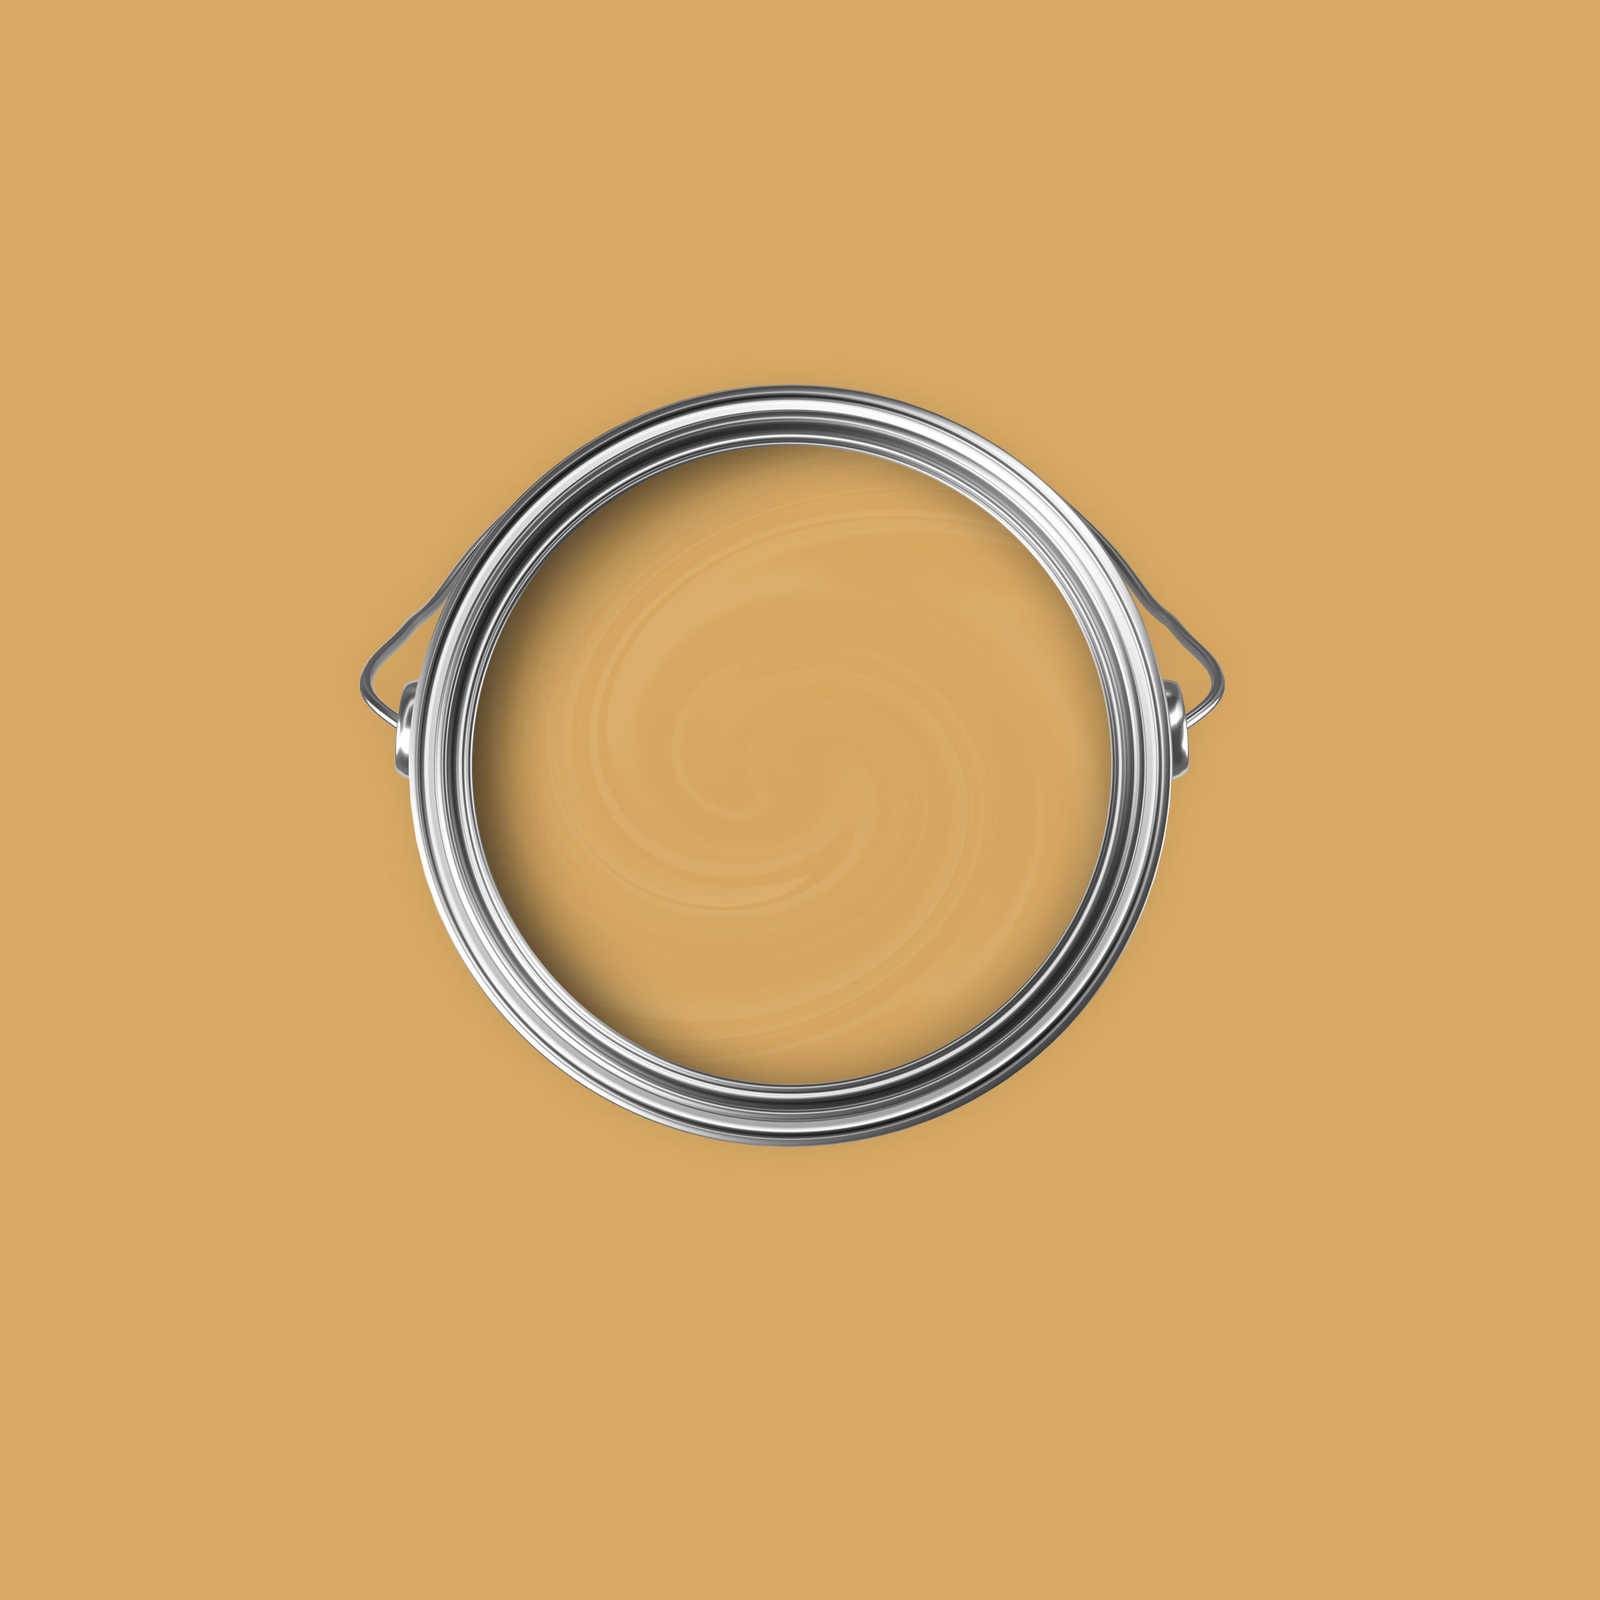             Premium Wandfarbe erfrischendes Senfgelb »Beige Orange/Sassy Saffron« NW812 – 2,5 Liter
        